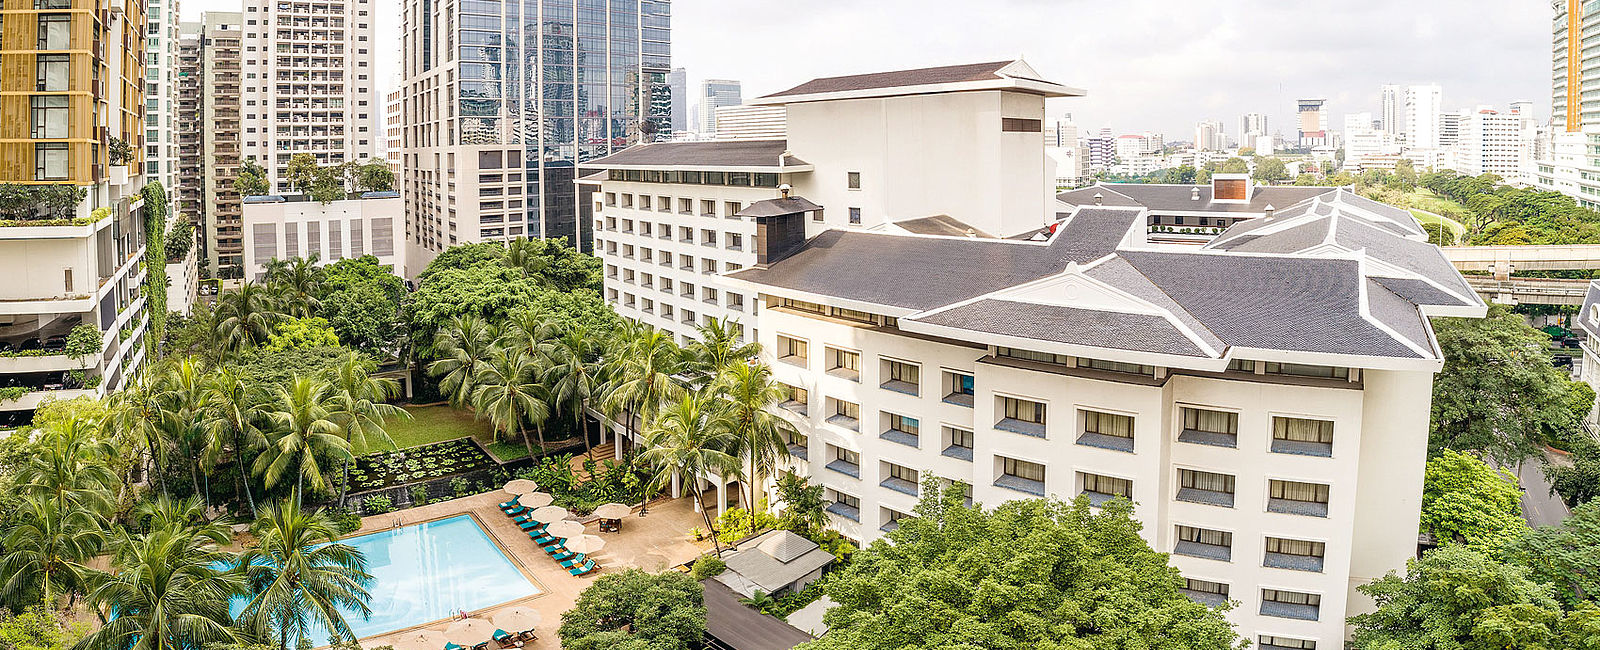 HOTELTEST
 Anantara Siam Bangkok Hotel 
 Asiatische Gastfreundschaft geht anders 